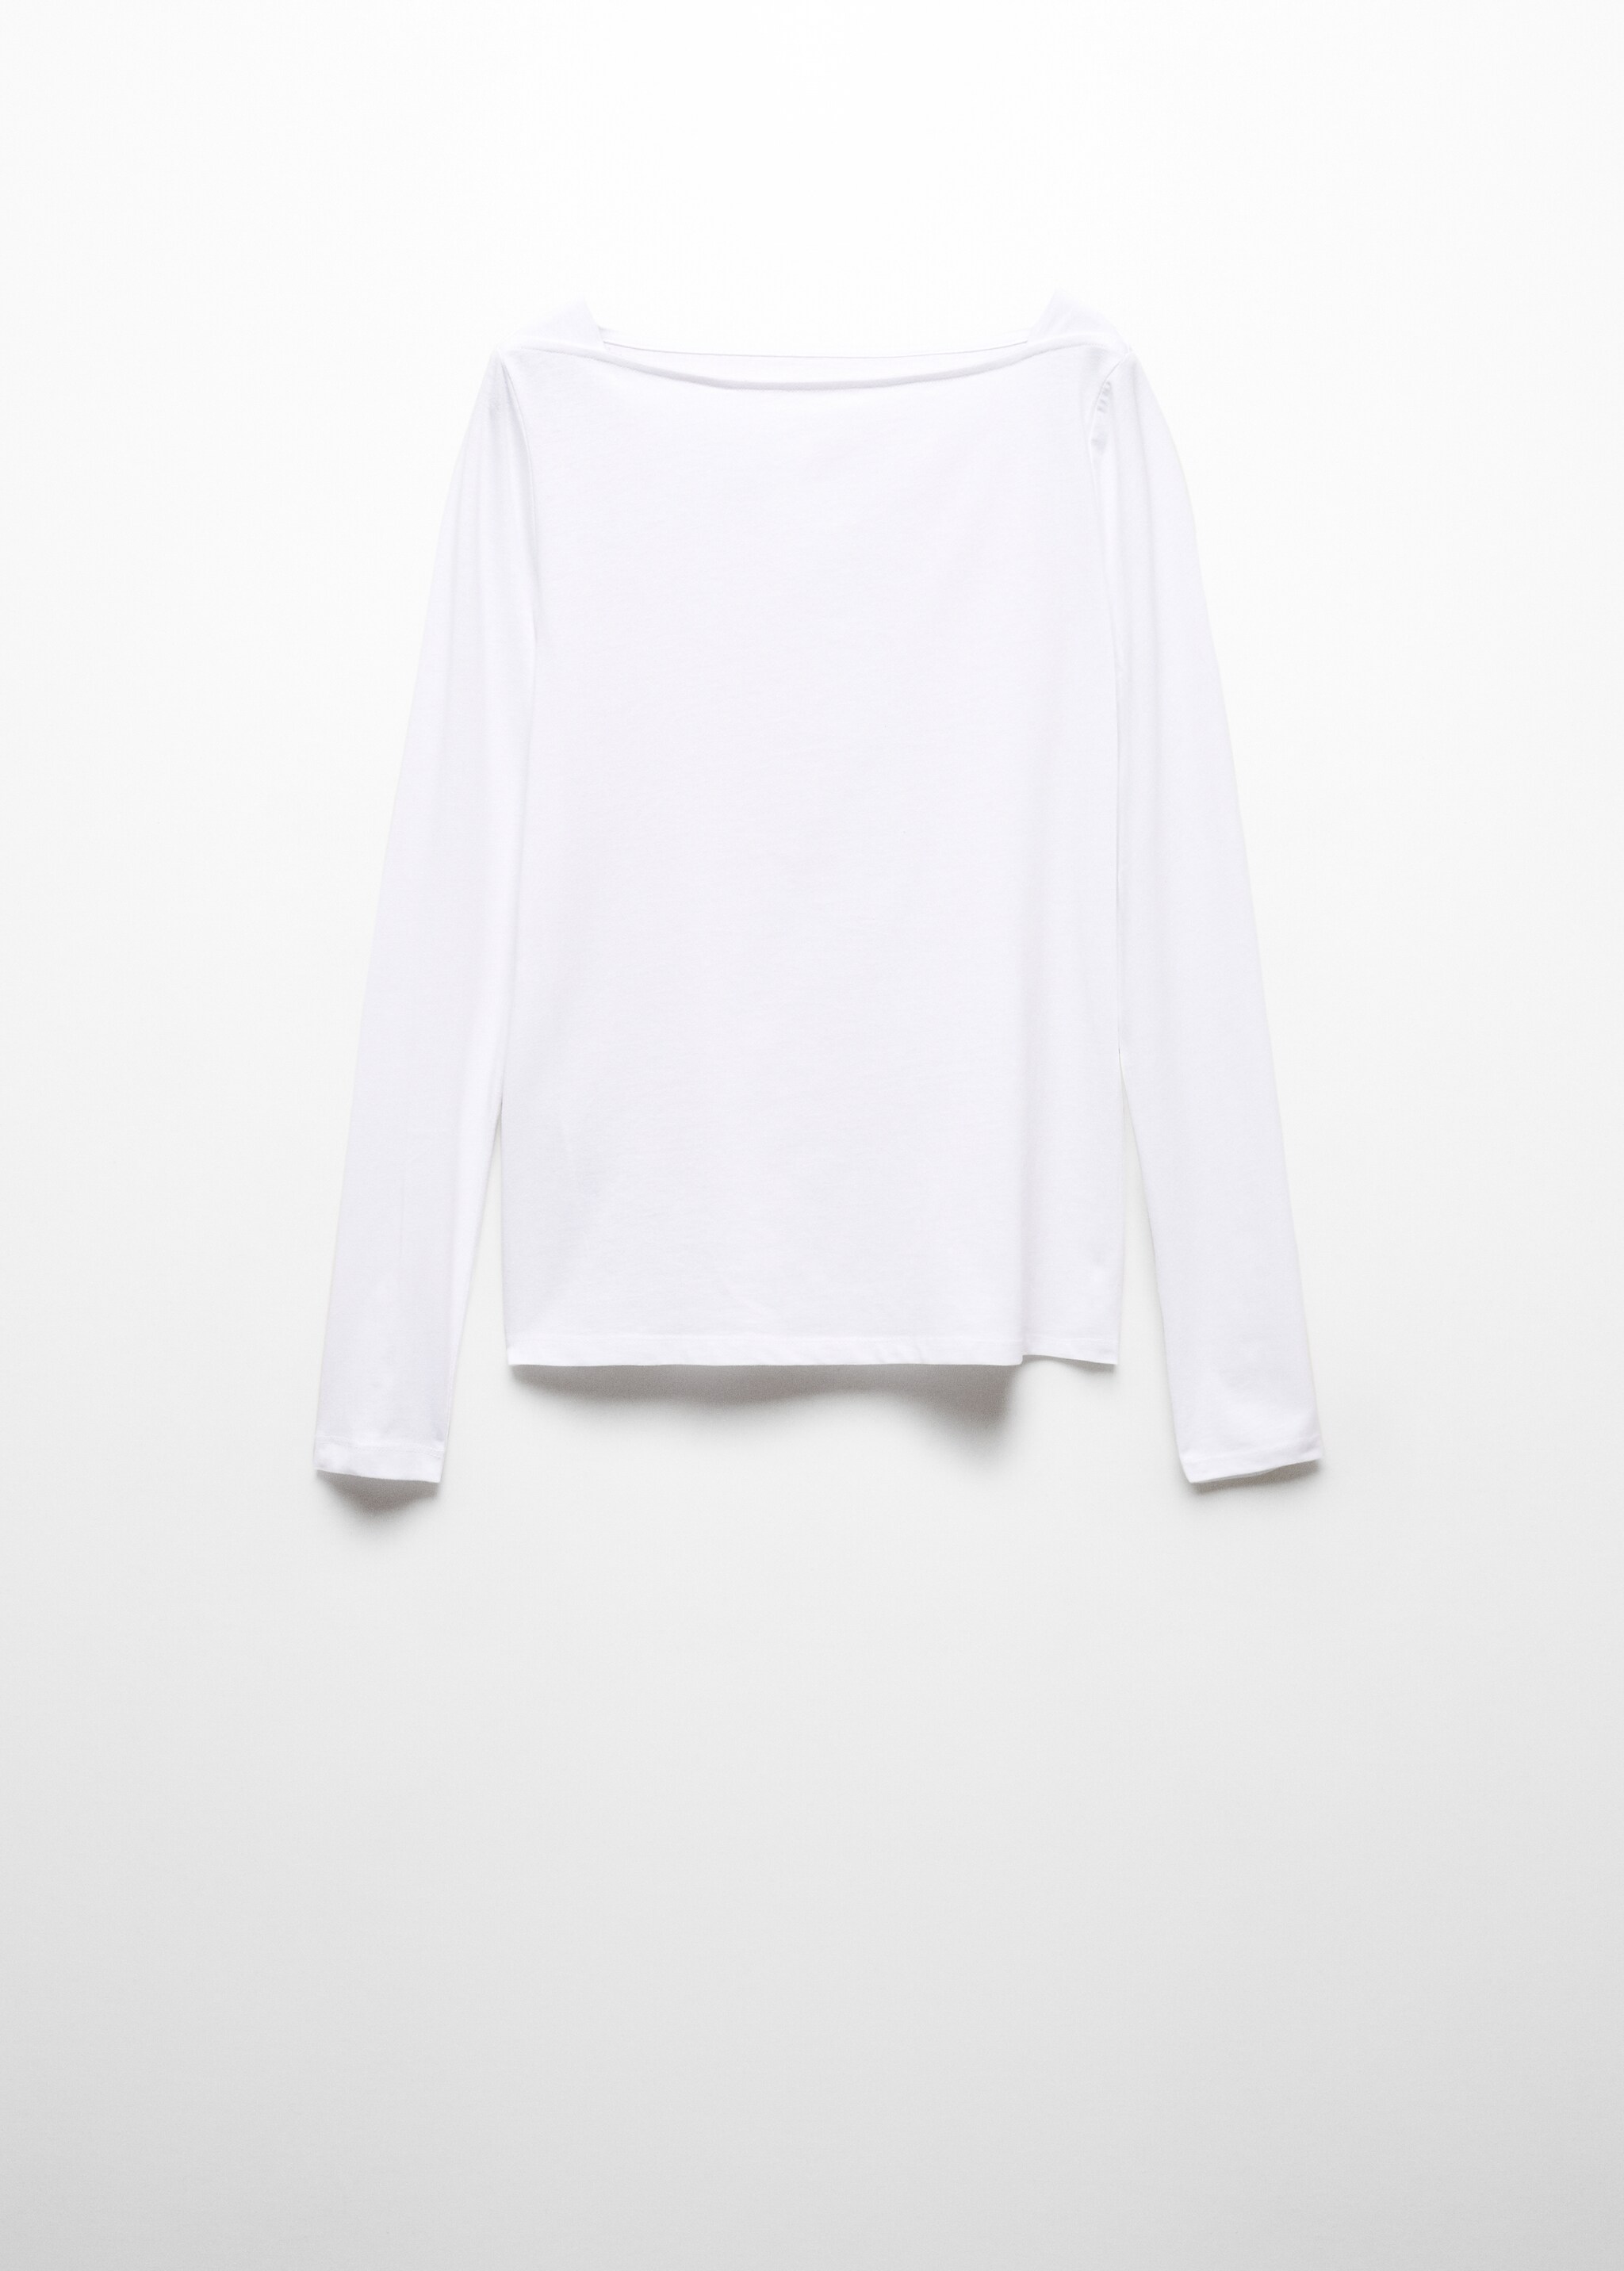 Camiseta cuello barco algodón - Artículo sin modelo